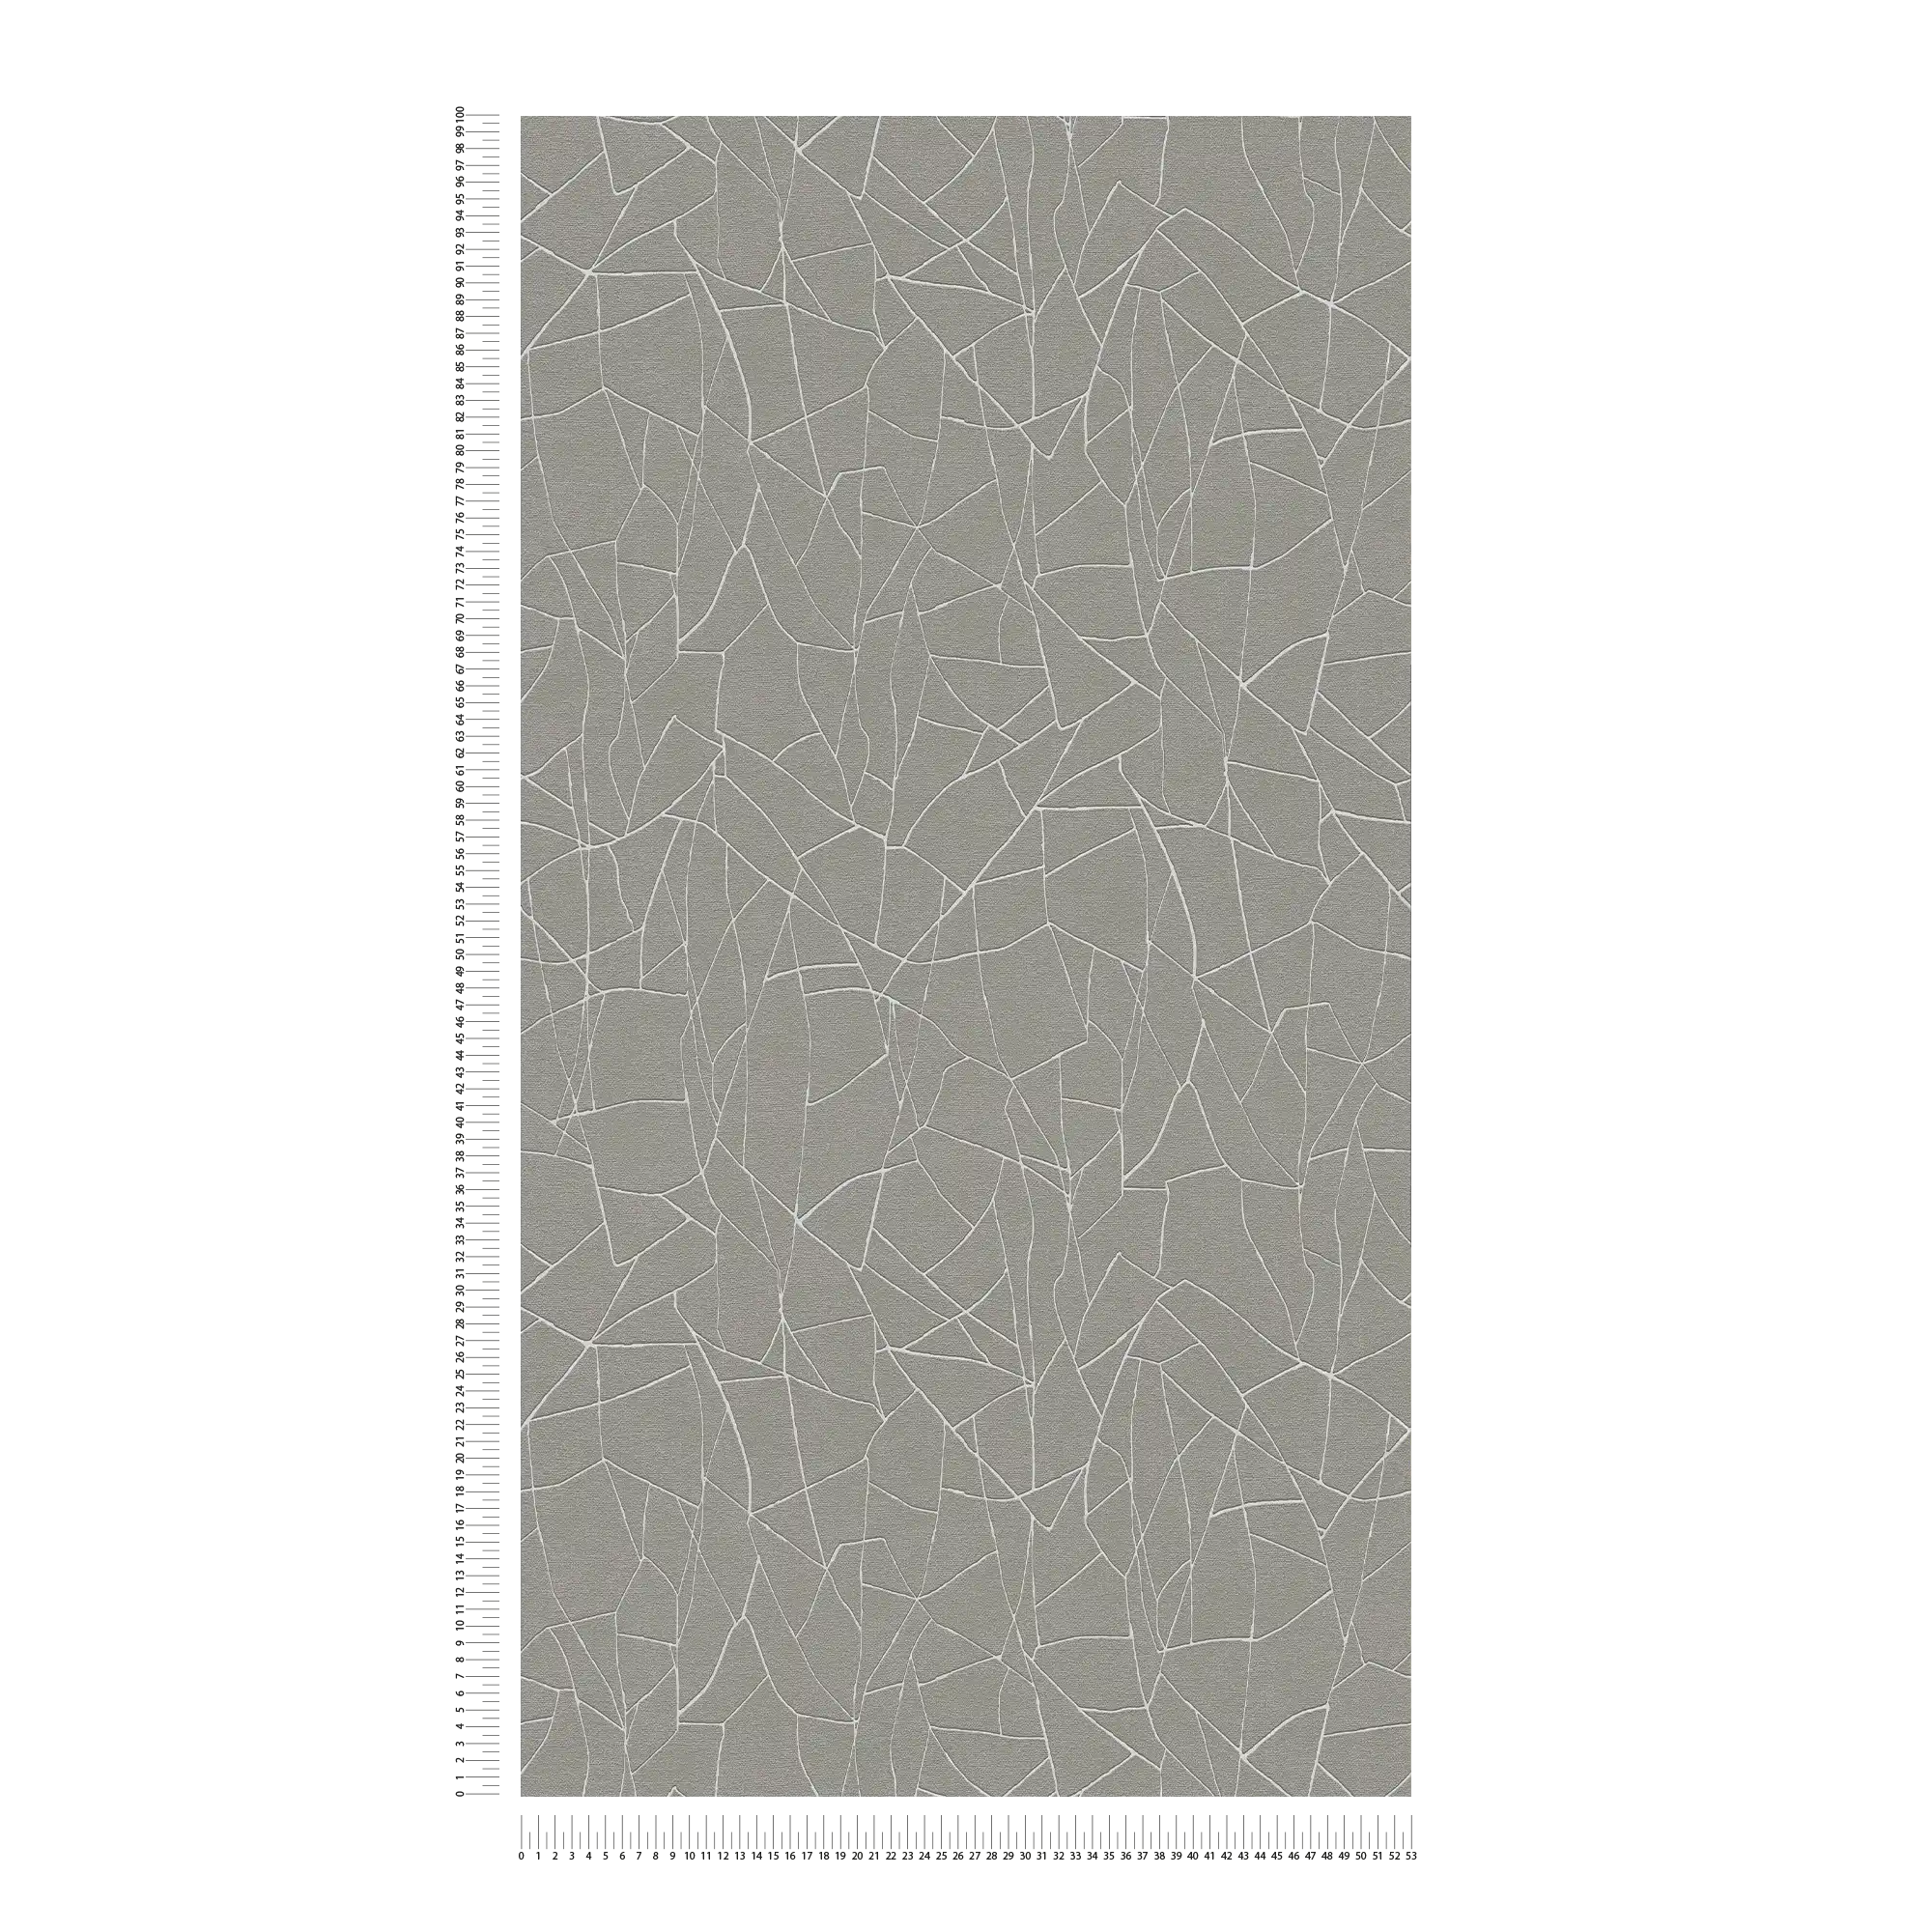             Grafische 3D Vliestapete mit Naturmuster – Grau, Weiß
        